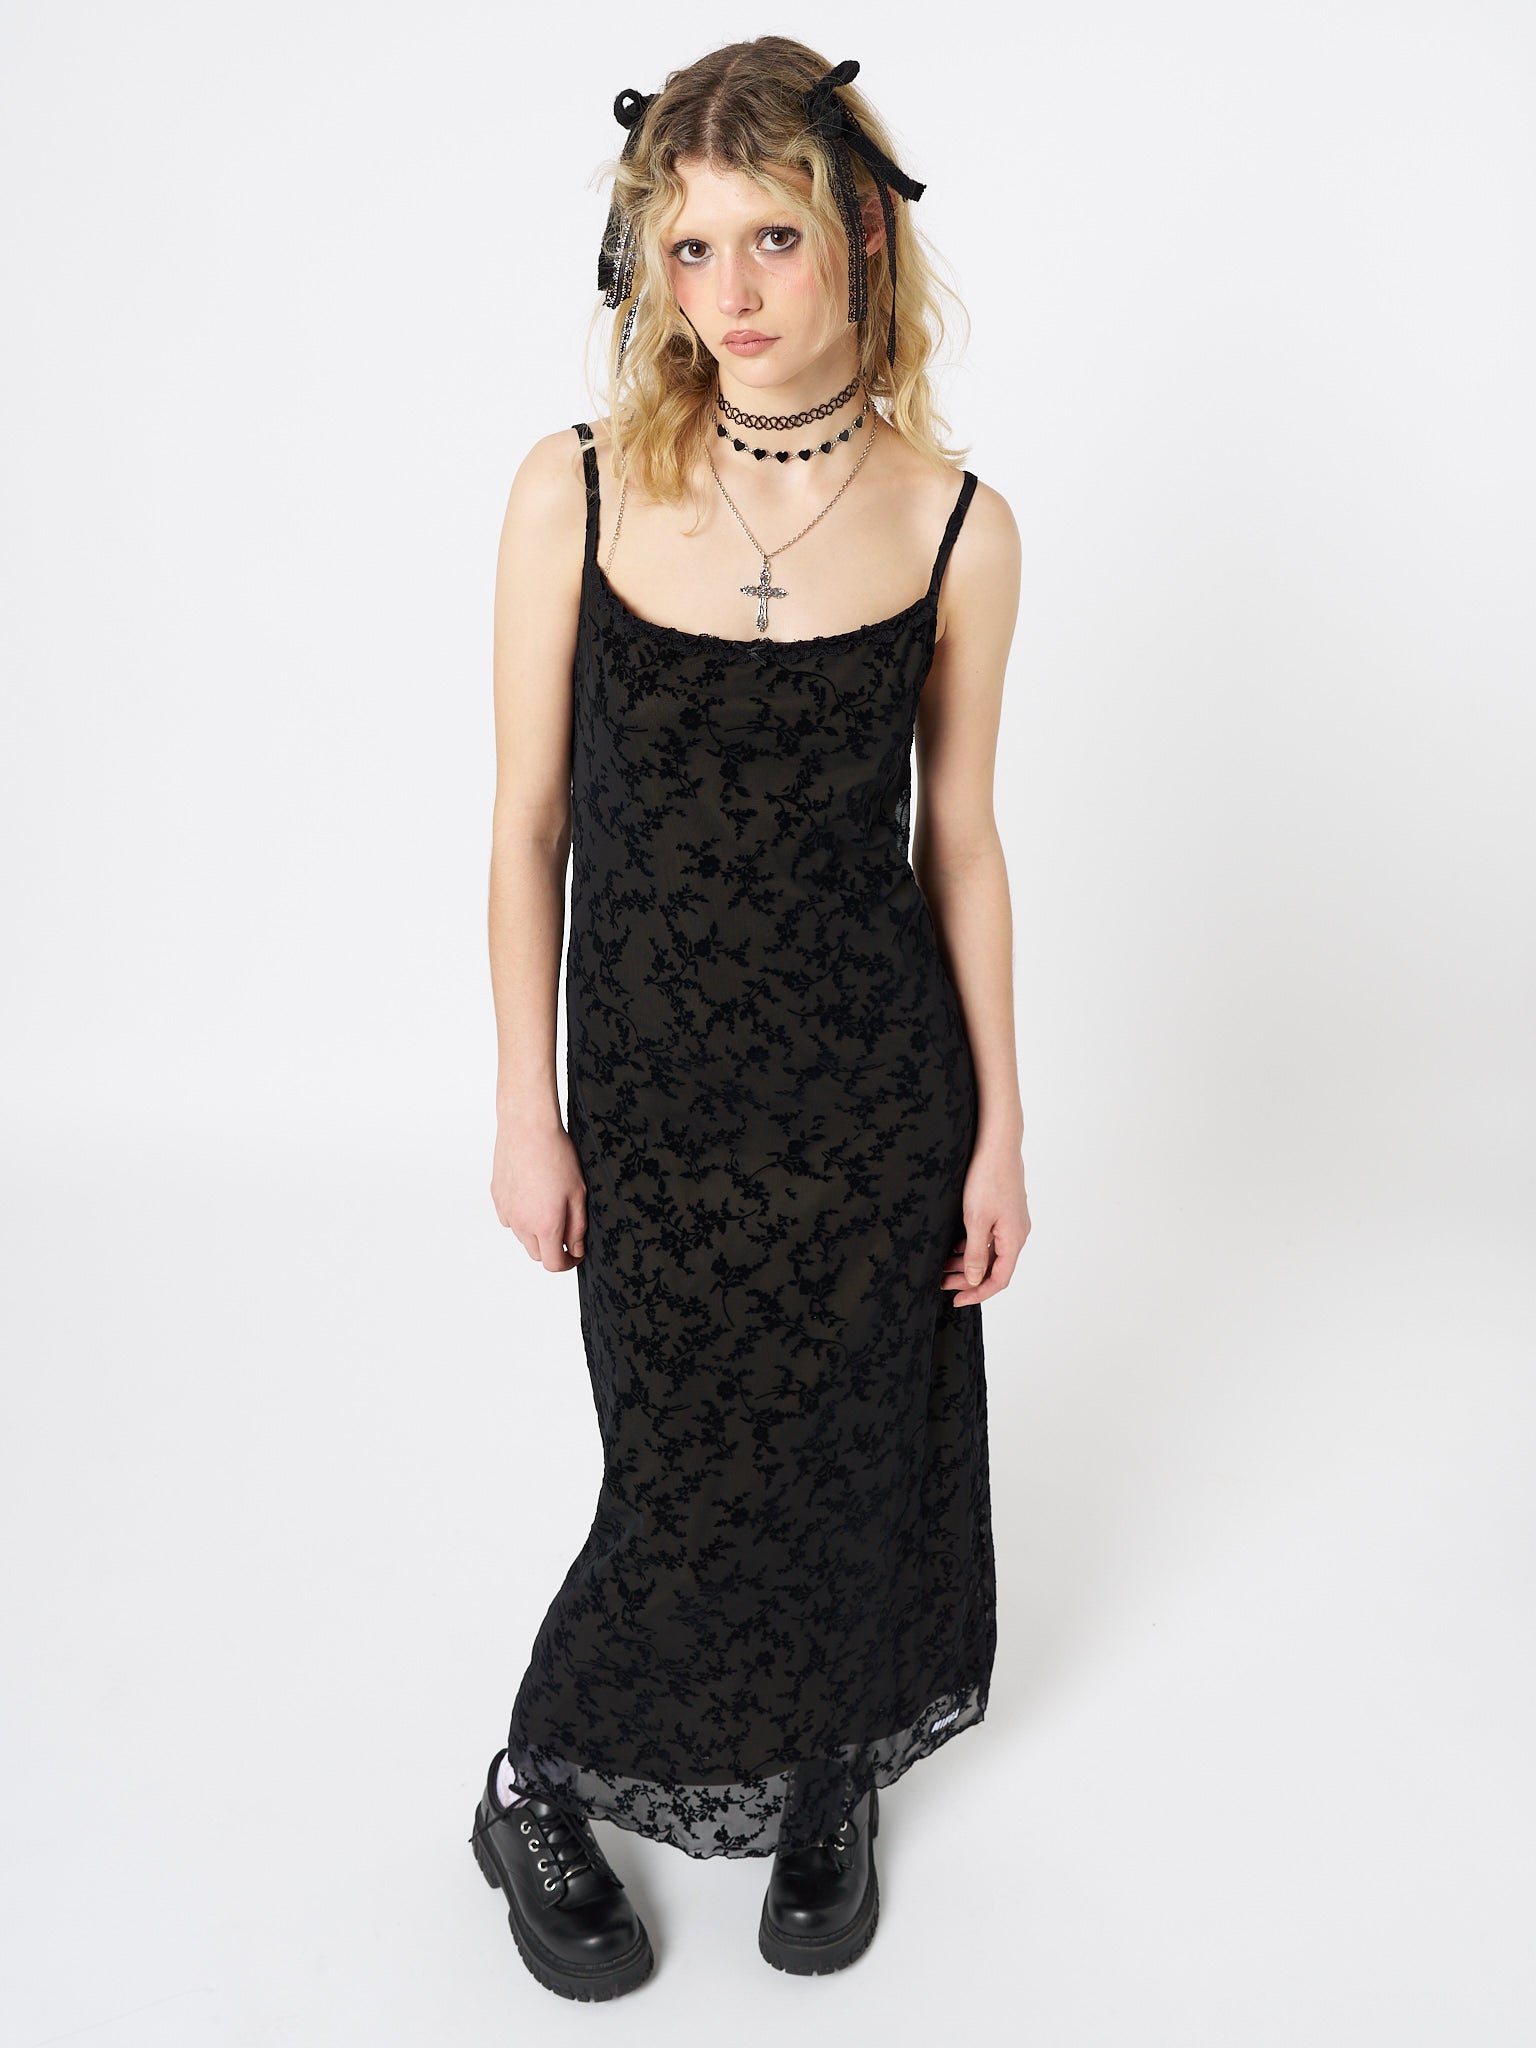 Titania Black Mesh Maxi Dress - Minga London